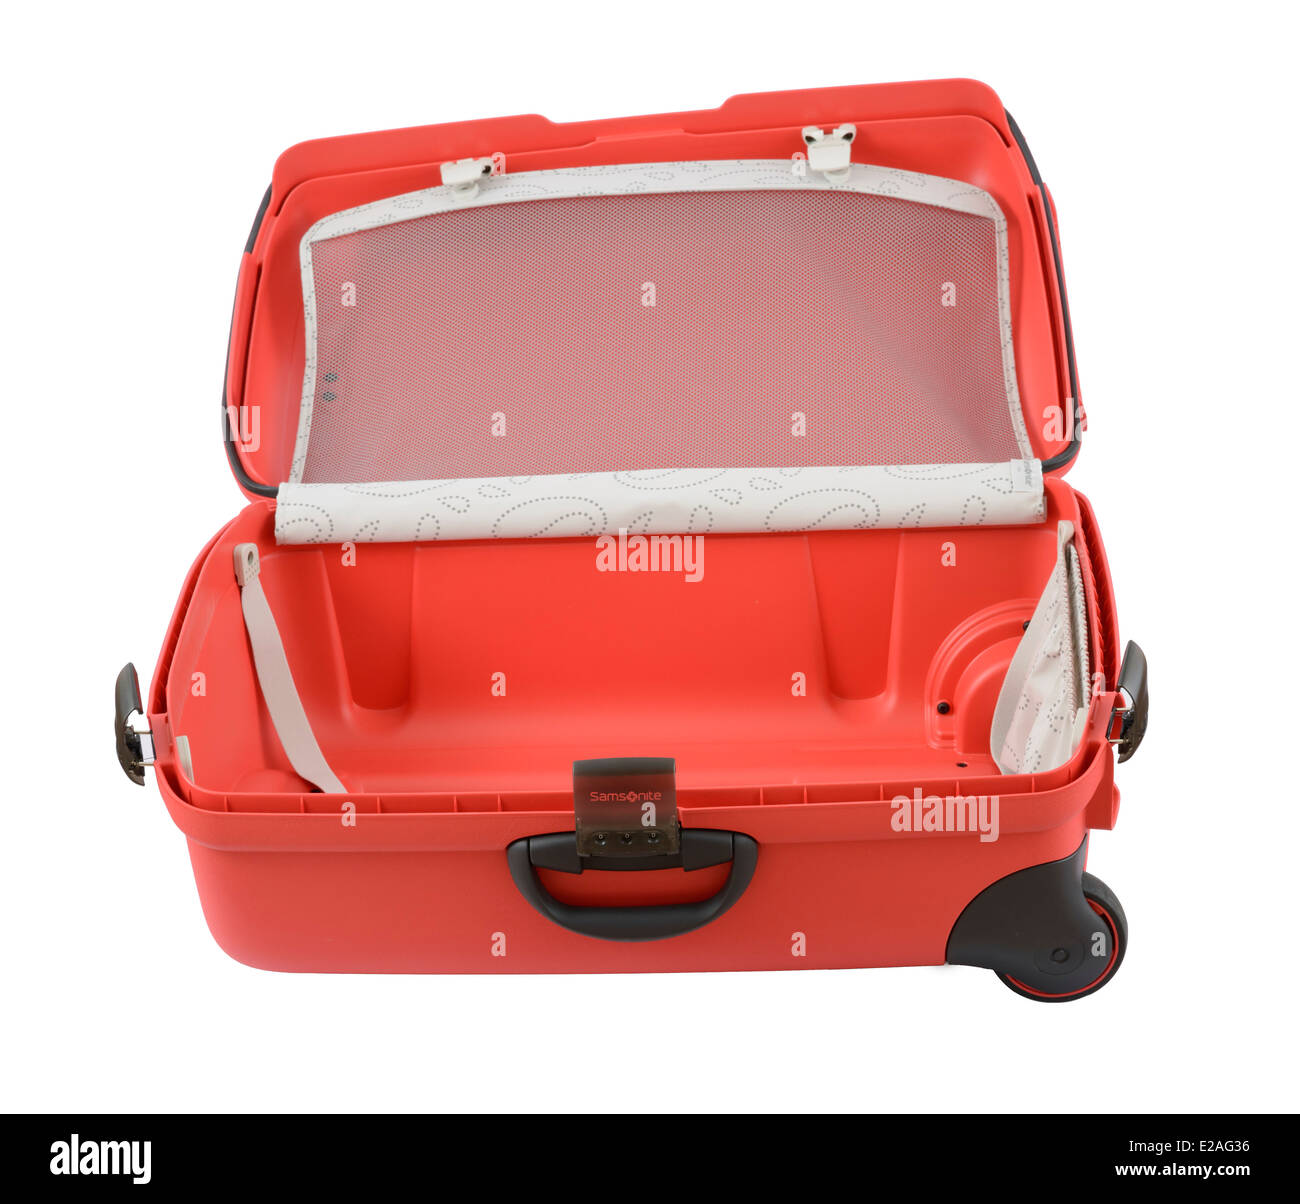 Offenen roten Samsonite Rollen Trolley Koffer isoliert auf weißem Hintergrund Stockfoto